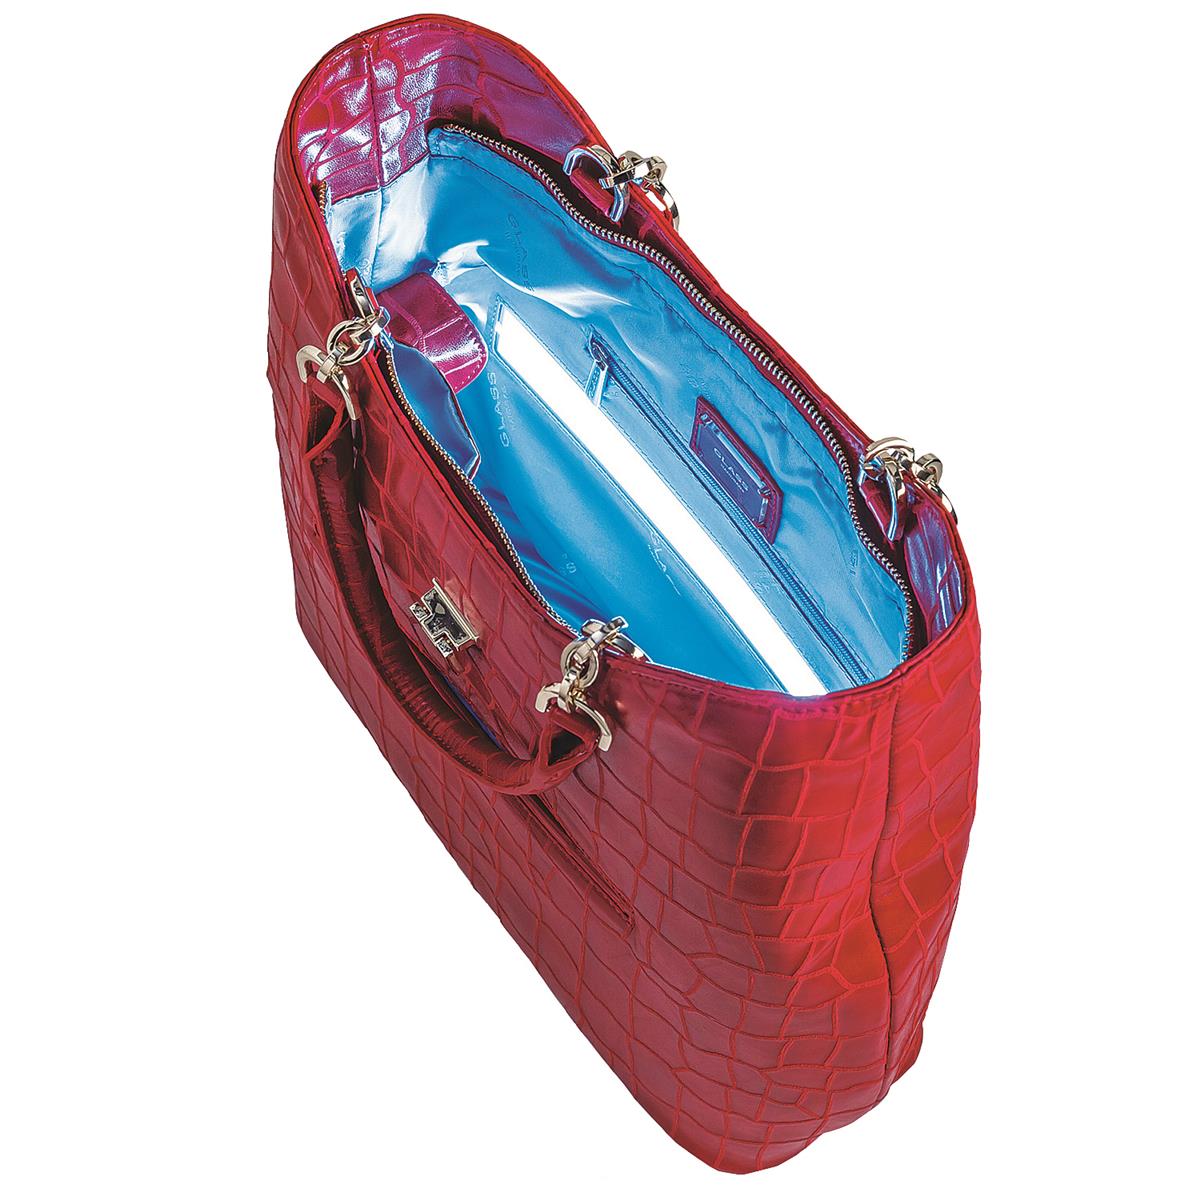 Glass Handbag | Tote Bag Red